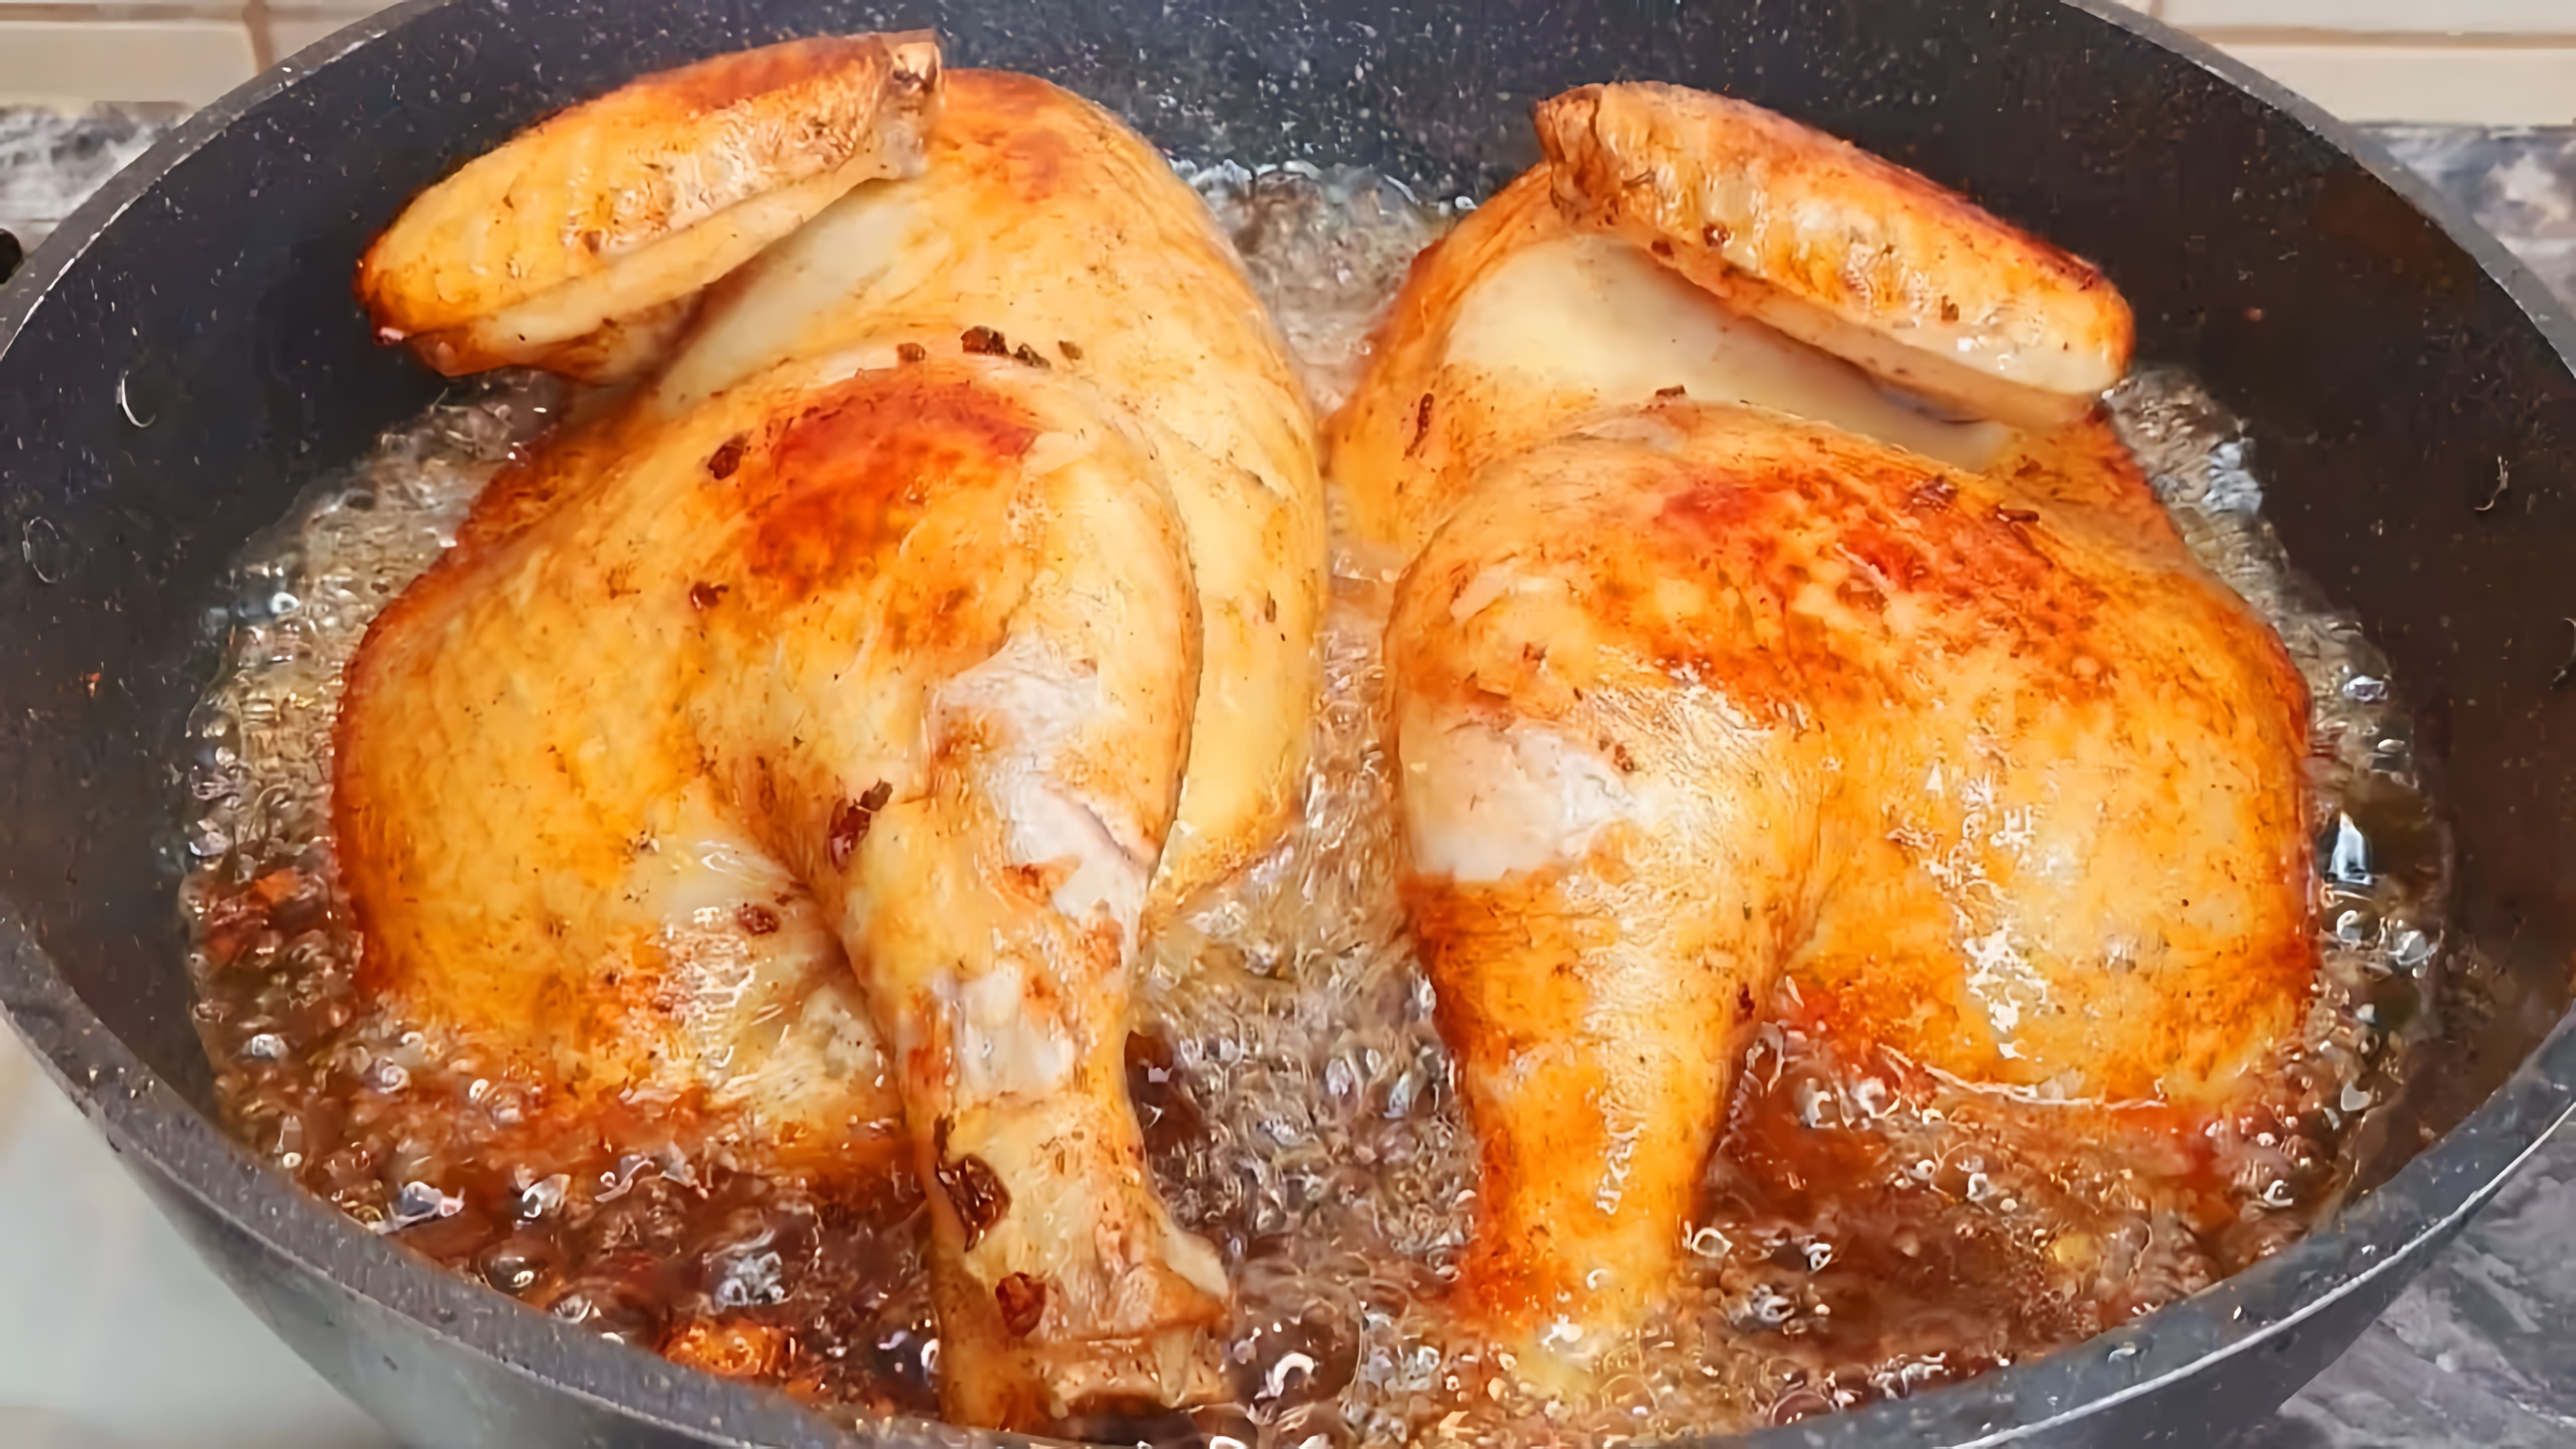 В этом видео повар демонстрирует секретные приемы приготовления курицы, которые обычно скрываются от зрителей